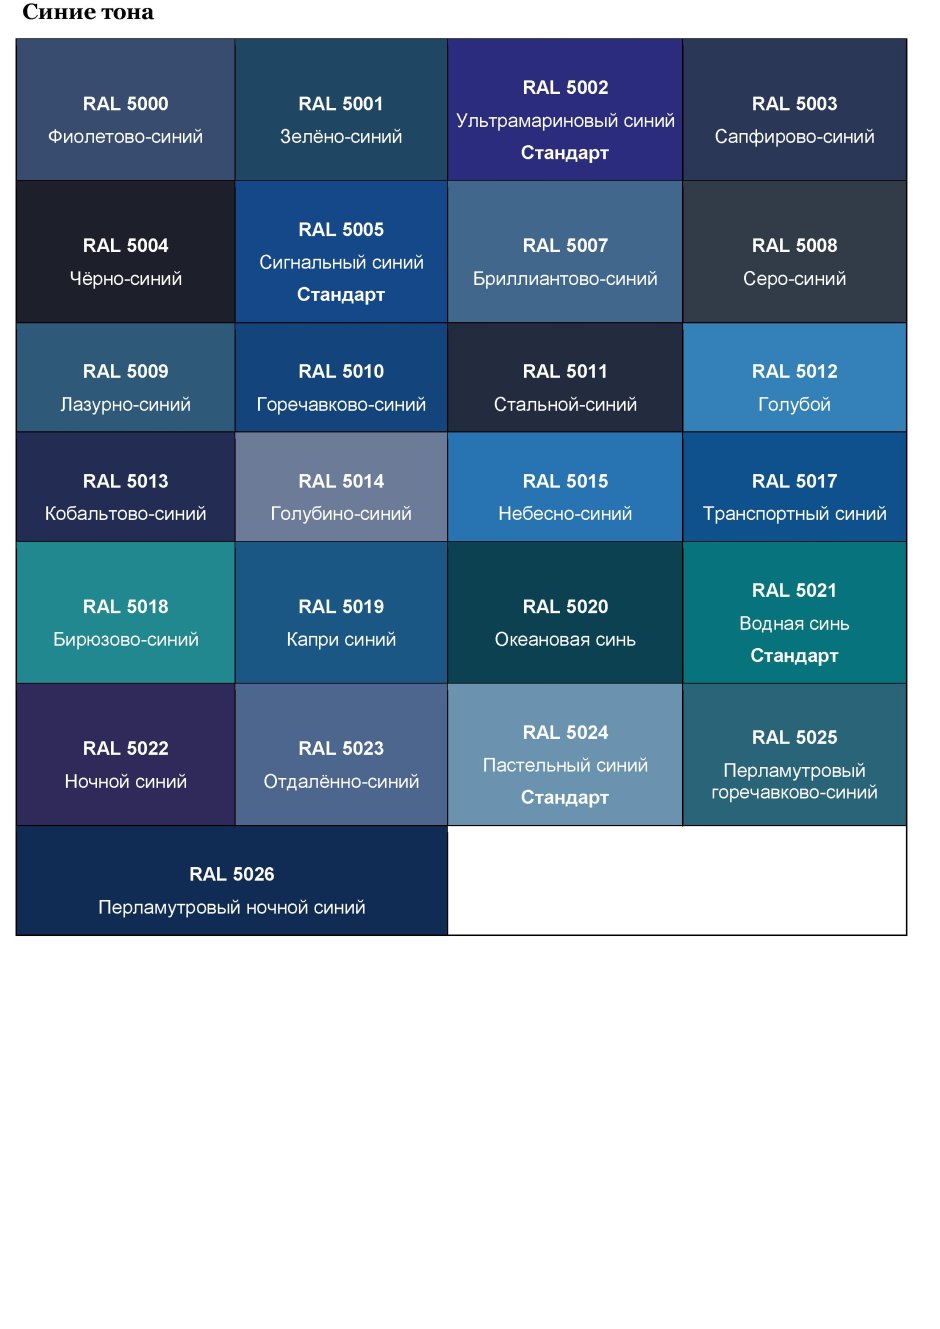 Оттенки синего таблица рал с названиями